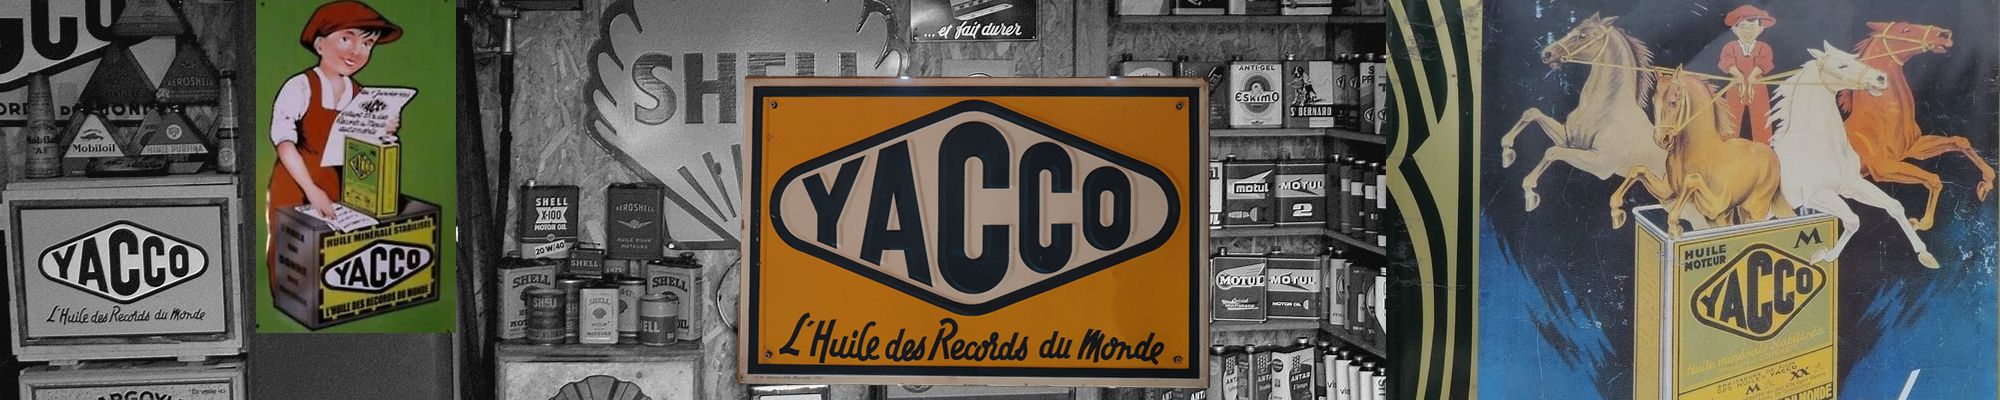 articles vintage marque Yacco